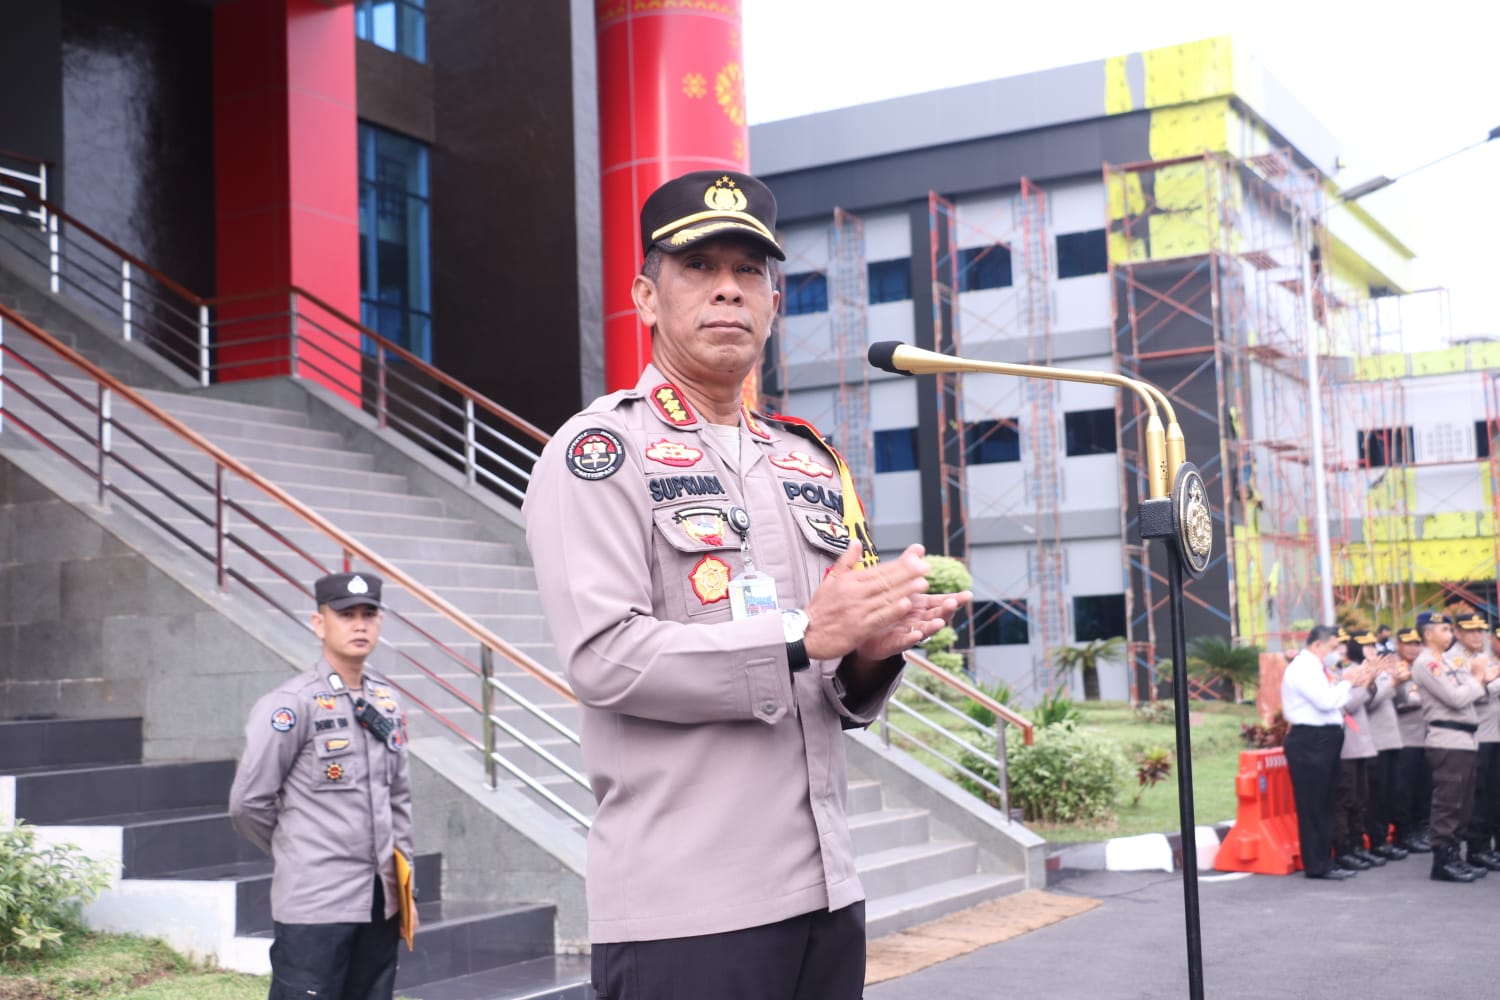 Polda Sumatera Selatan Ungkap 37 Kasus Narkoba, Amankan 7,6 Kilogram Sabu-sabu